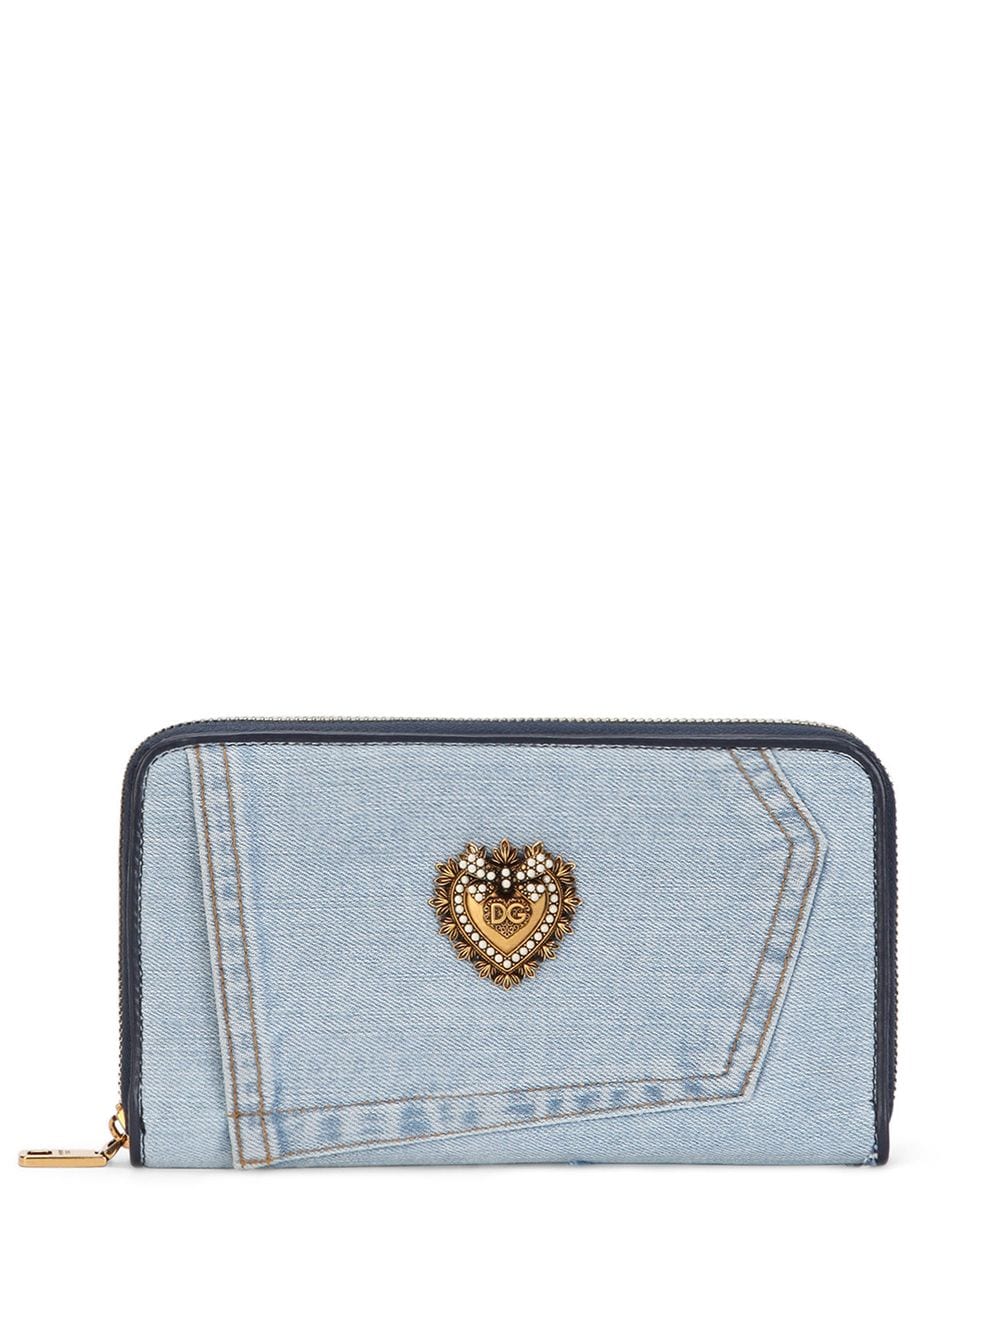 Dolce & Gabbana Devotion Denim Wallet In Blue